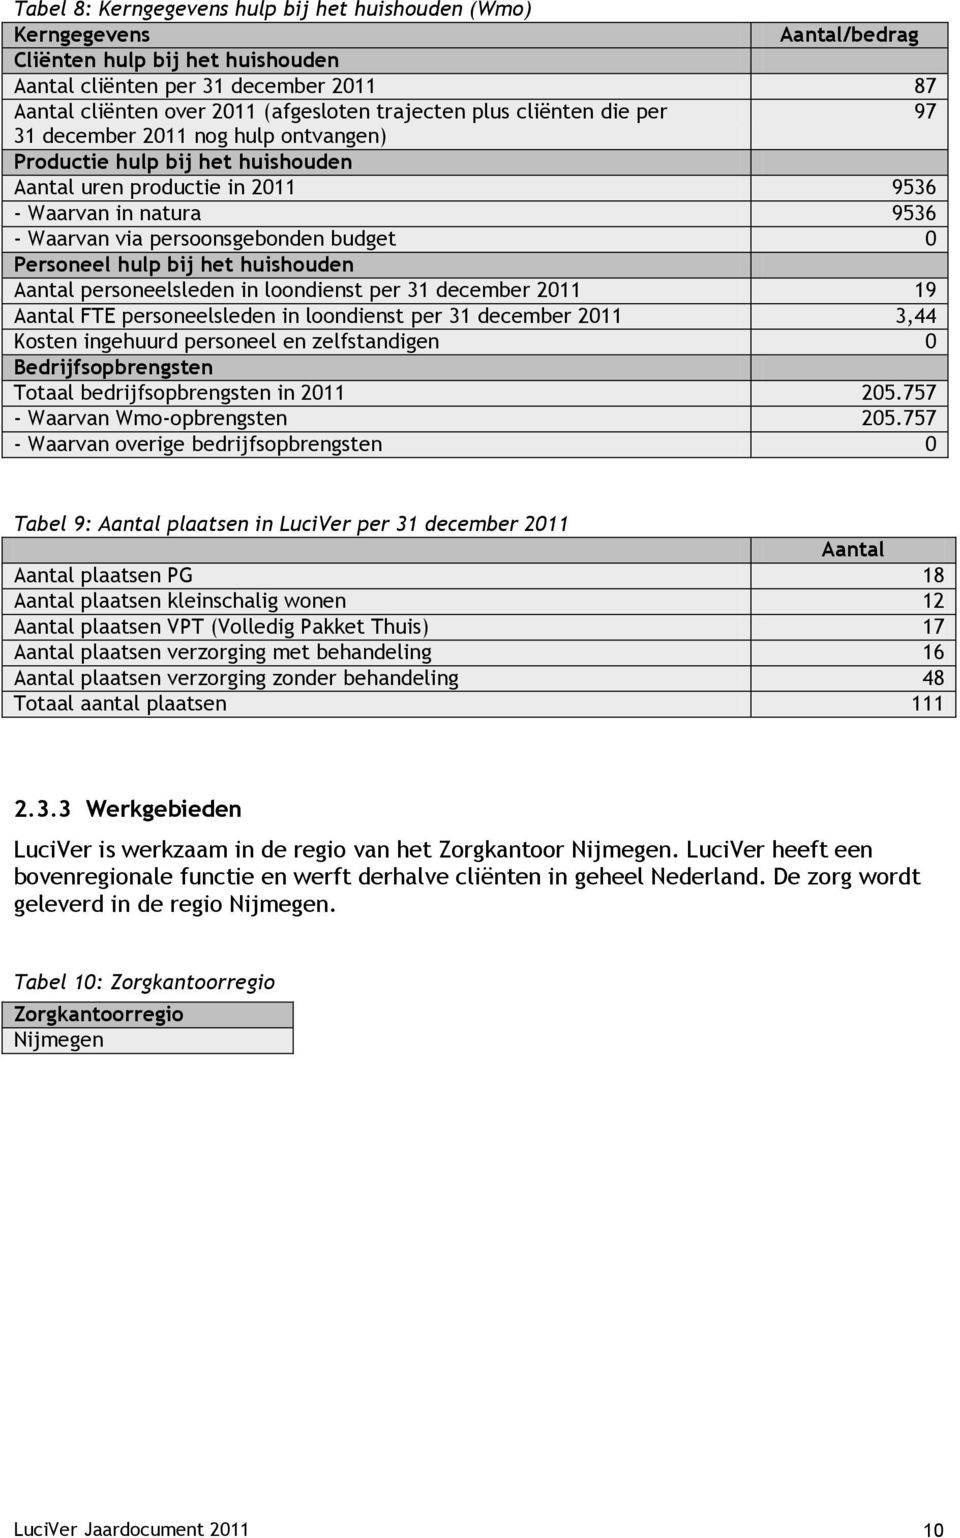 Personeel hulp bij het huishouden Aantal personeelsleden in loondienst per 31 december 2011 19 Aantal FTE personeelsleden in loondienst per 31 december 2011 3,44 Kosten ingehuurd personeel en